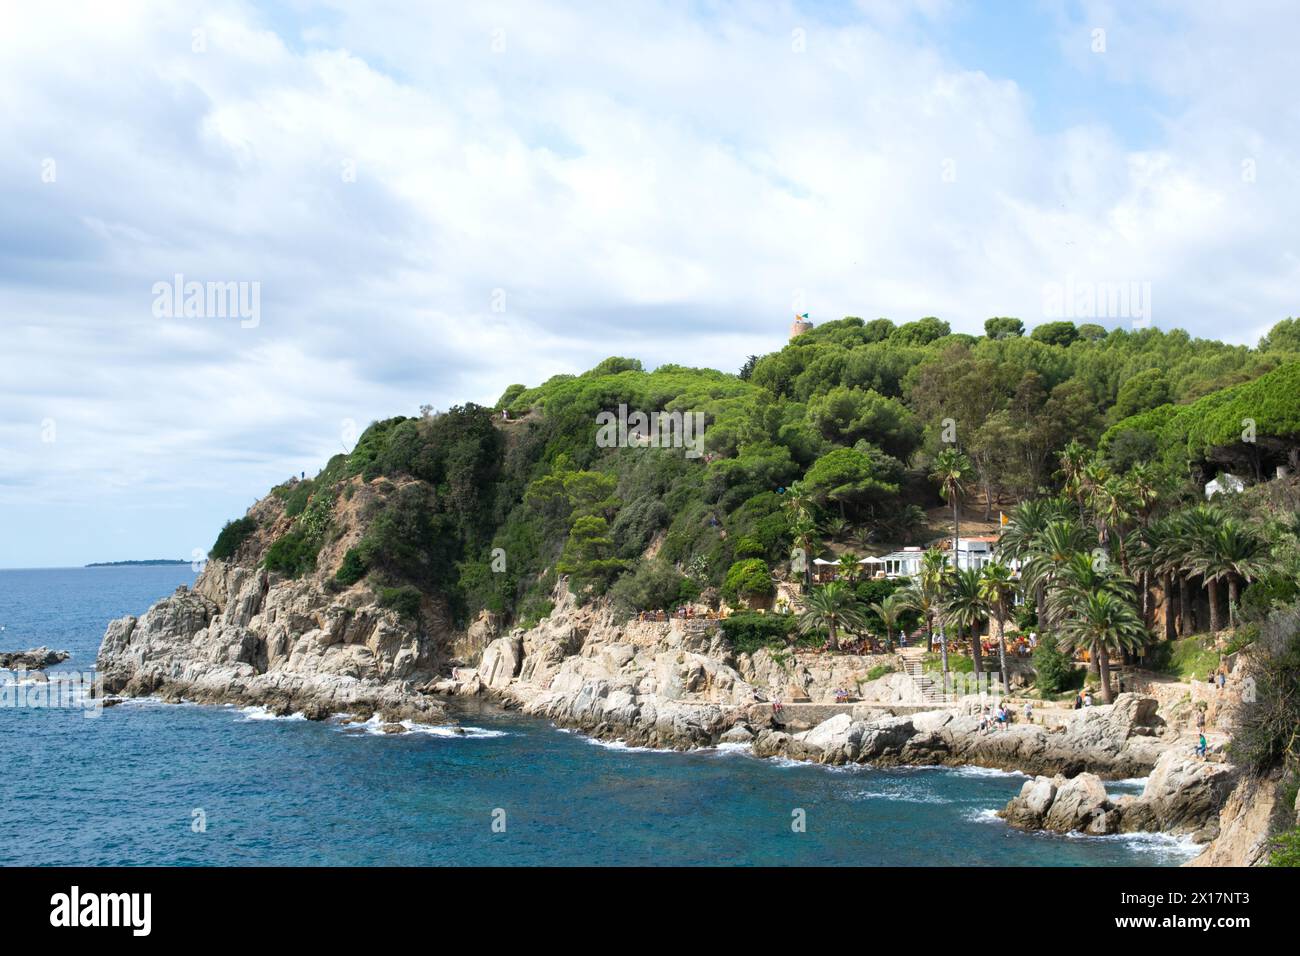 Hotel auf der Insel mit Palmen, Café, Menschen an der Küste. Panorama-Luftaufnahme der sealine in Spanien. Stockfoto